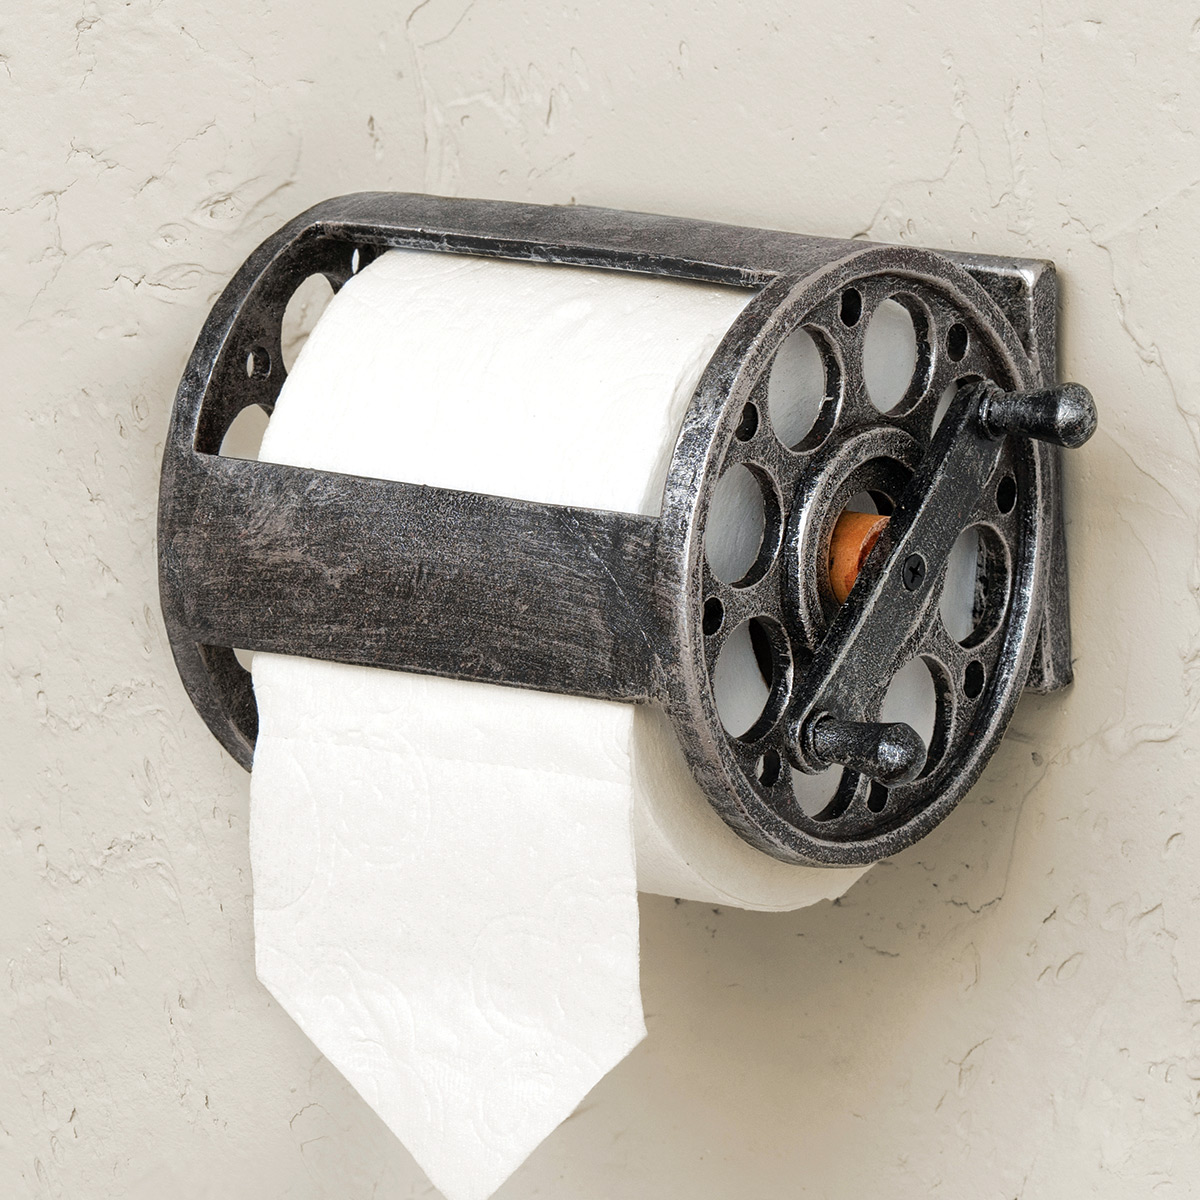 Fly Fishing Reel Toilet Paper Holder